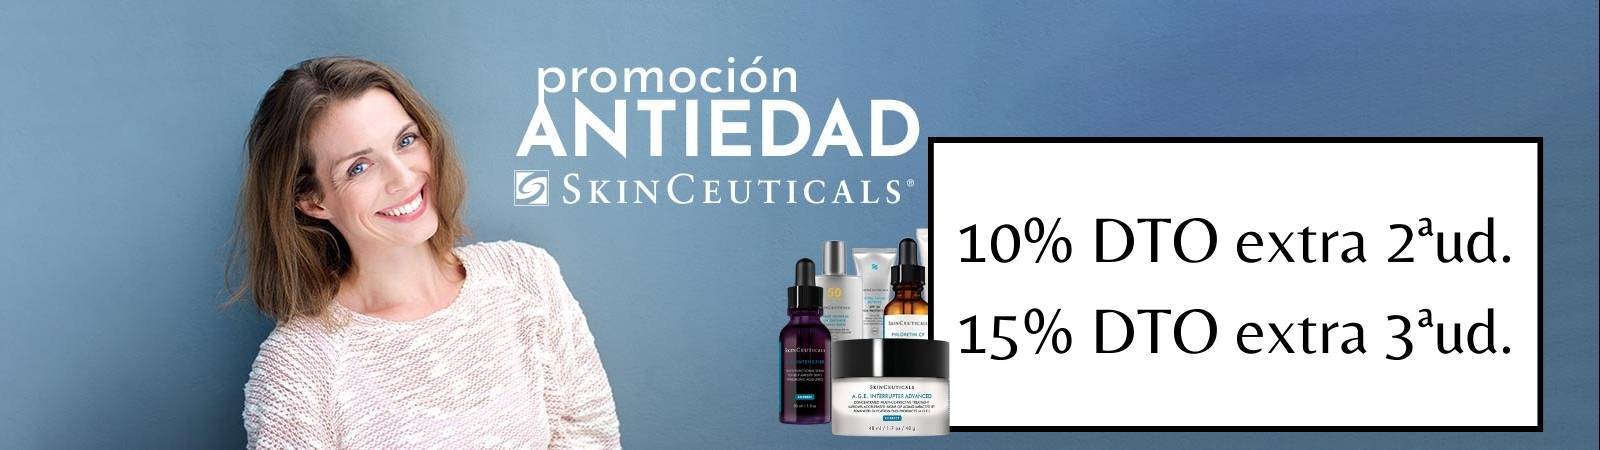 promoción antiedad skinceuticals